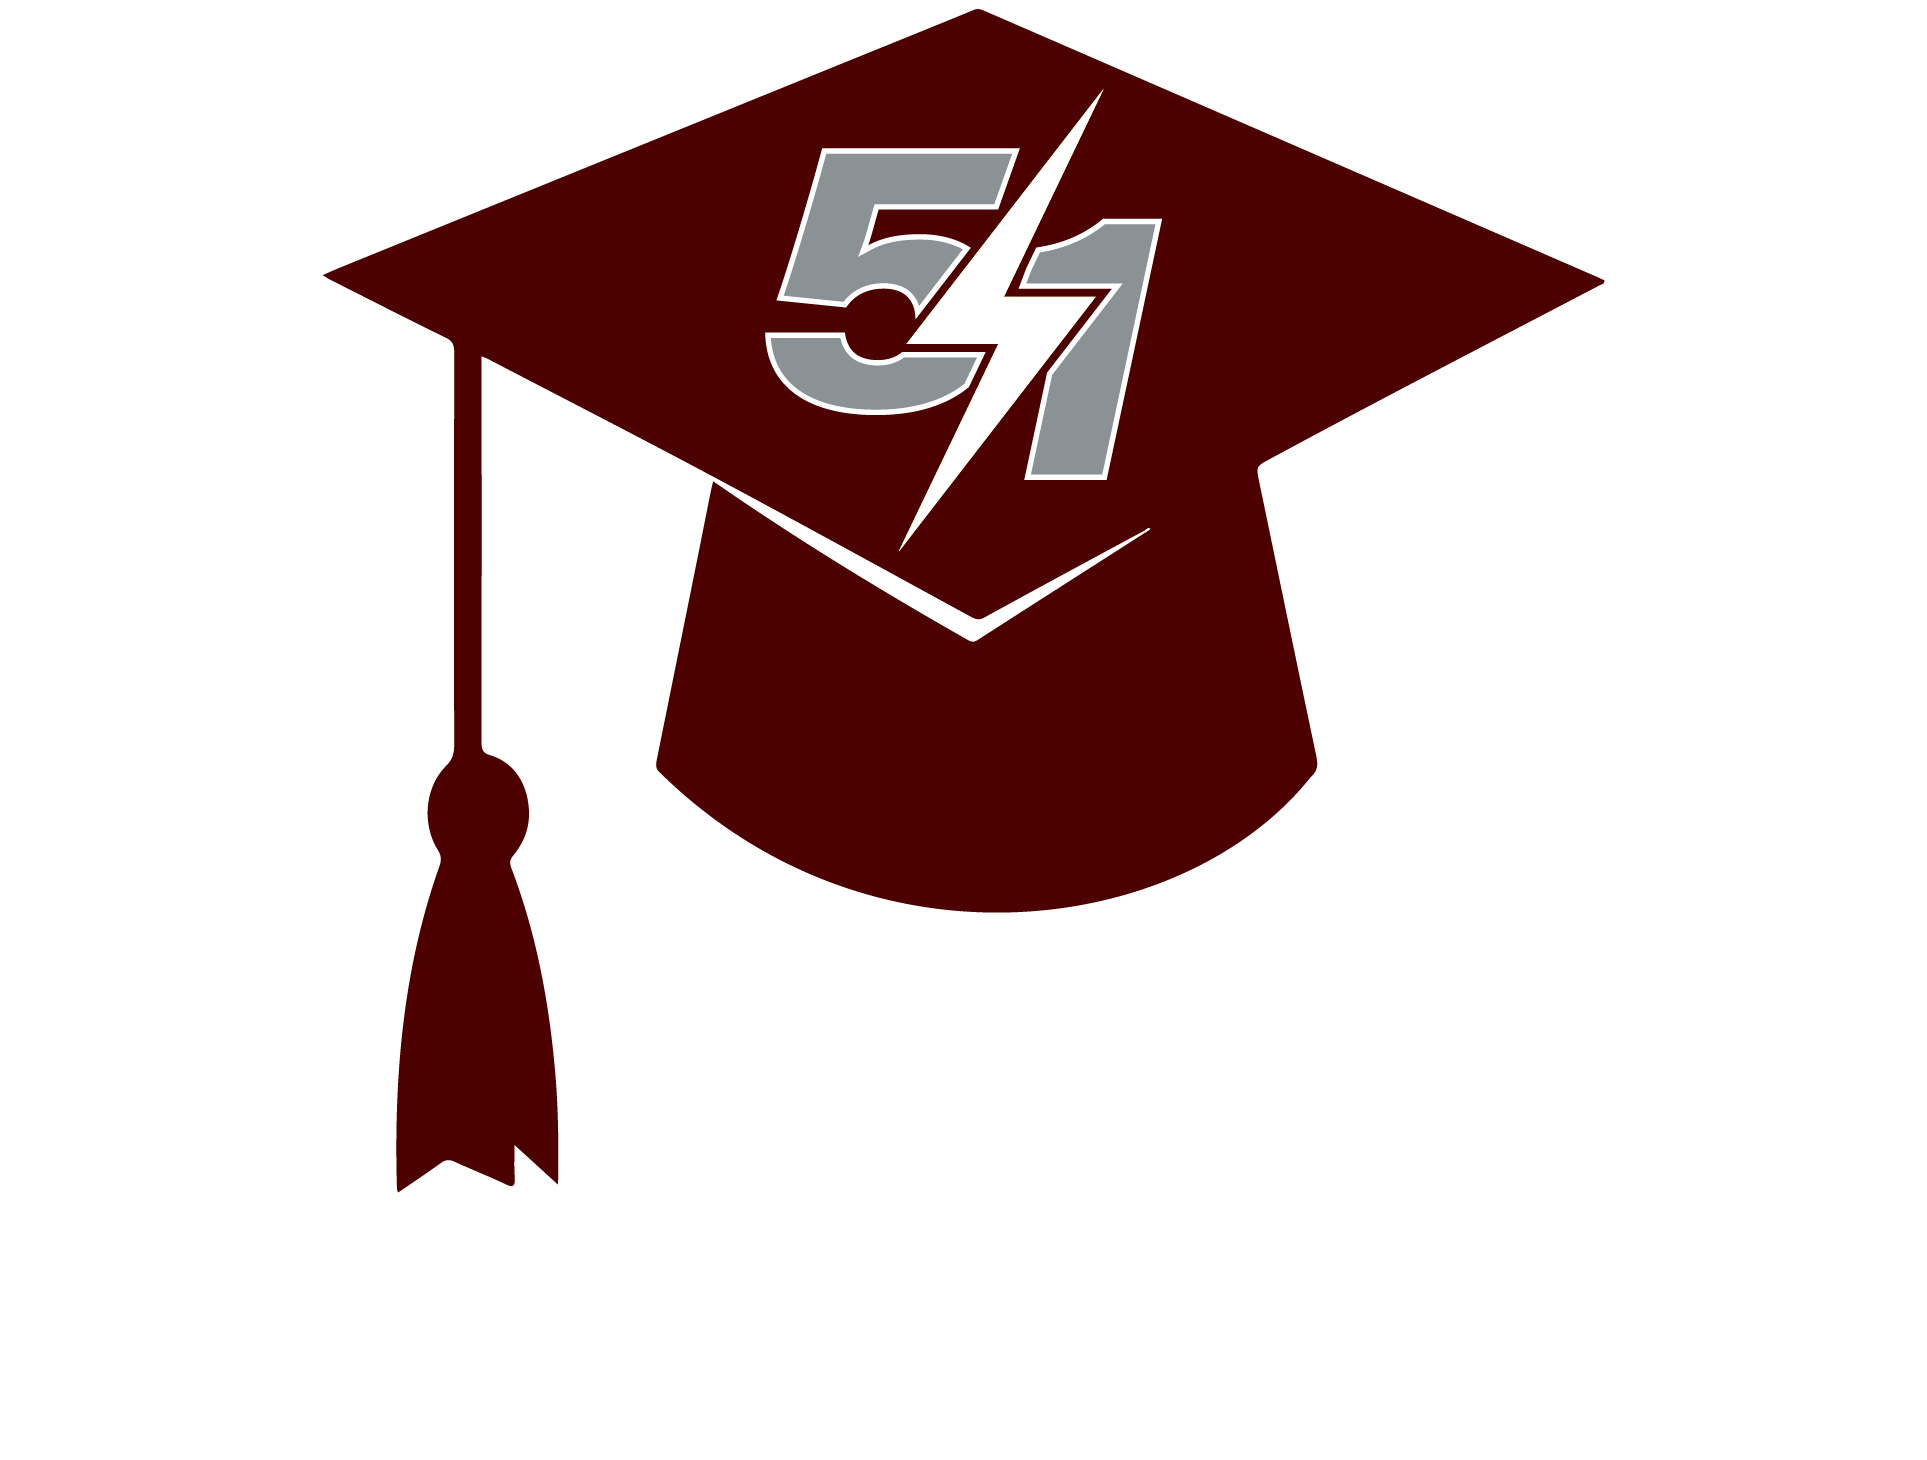 51 Training Institute